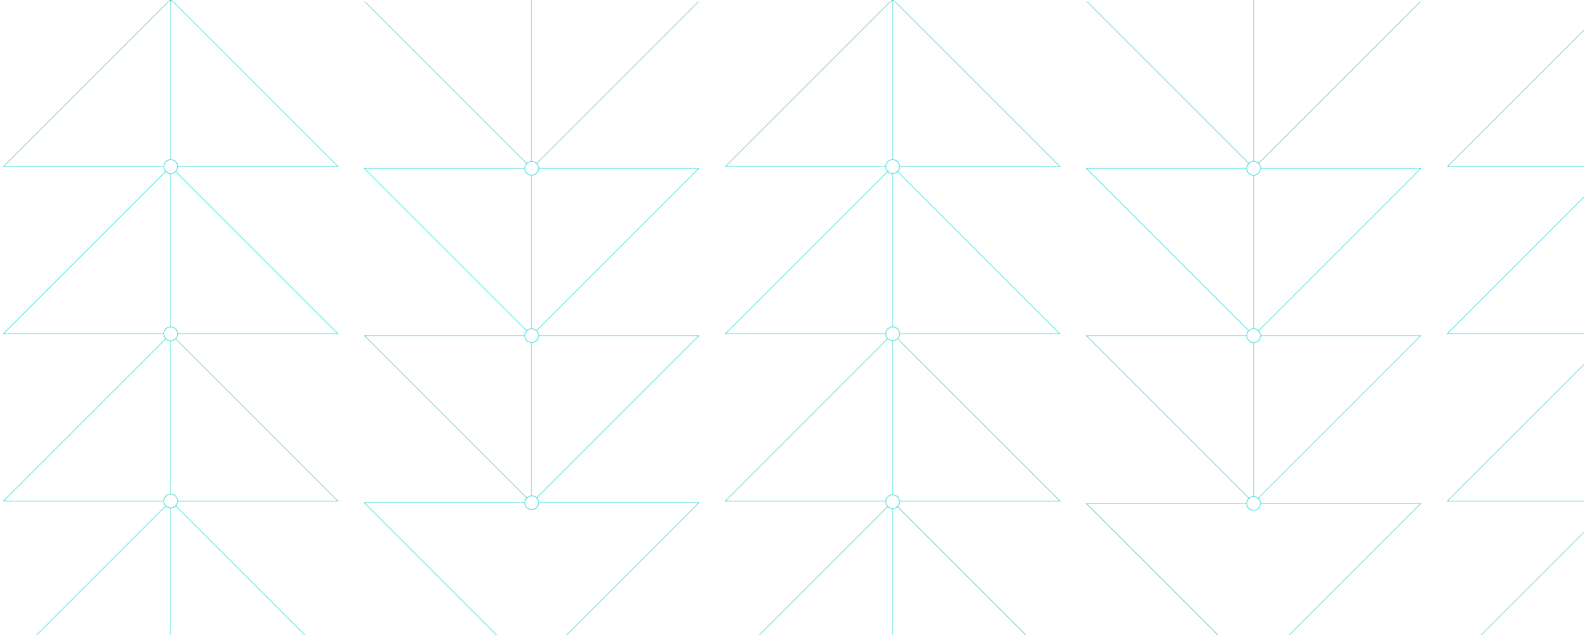 Ilustración que muestra finas líneas azules que forman delicados patrones triangulares